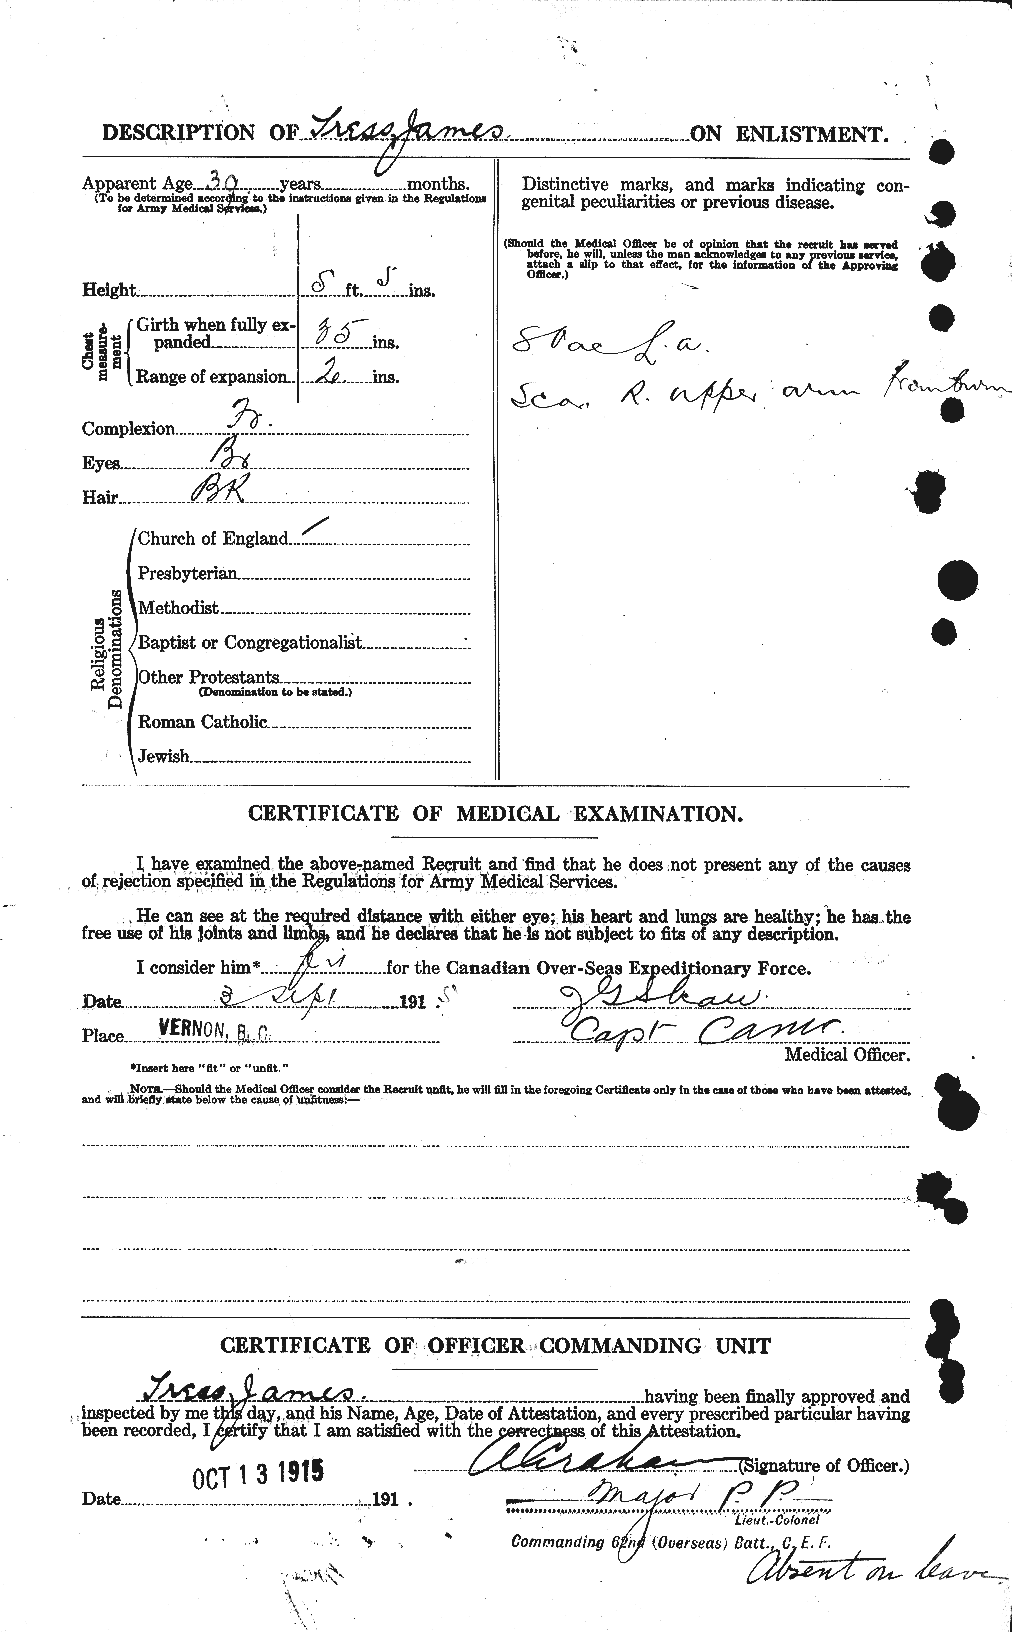 Dossiers du Personnel de la Première Guerre mondiale - CEC 638589b